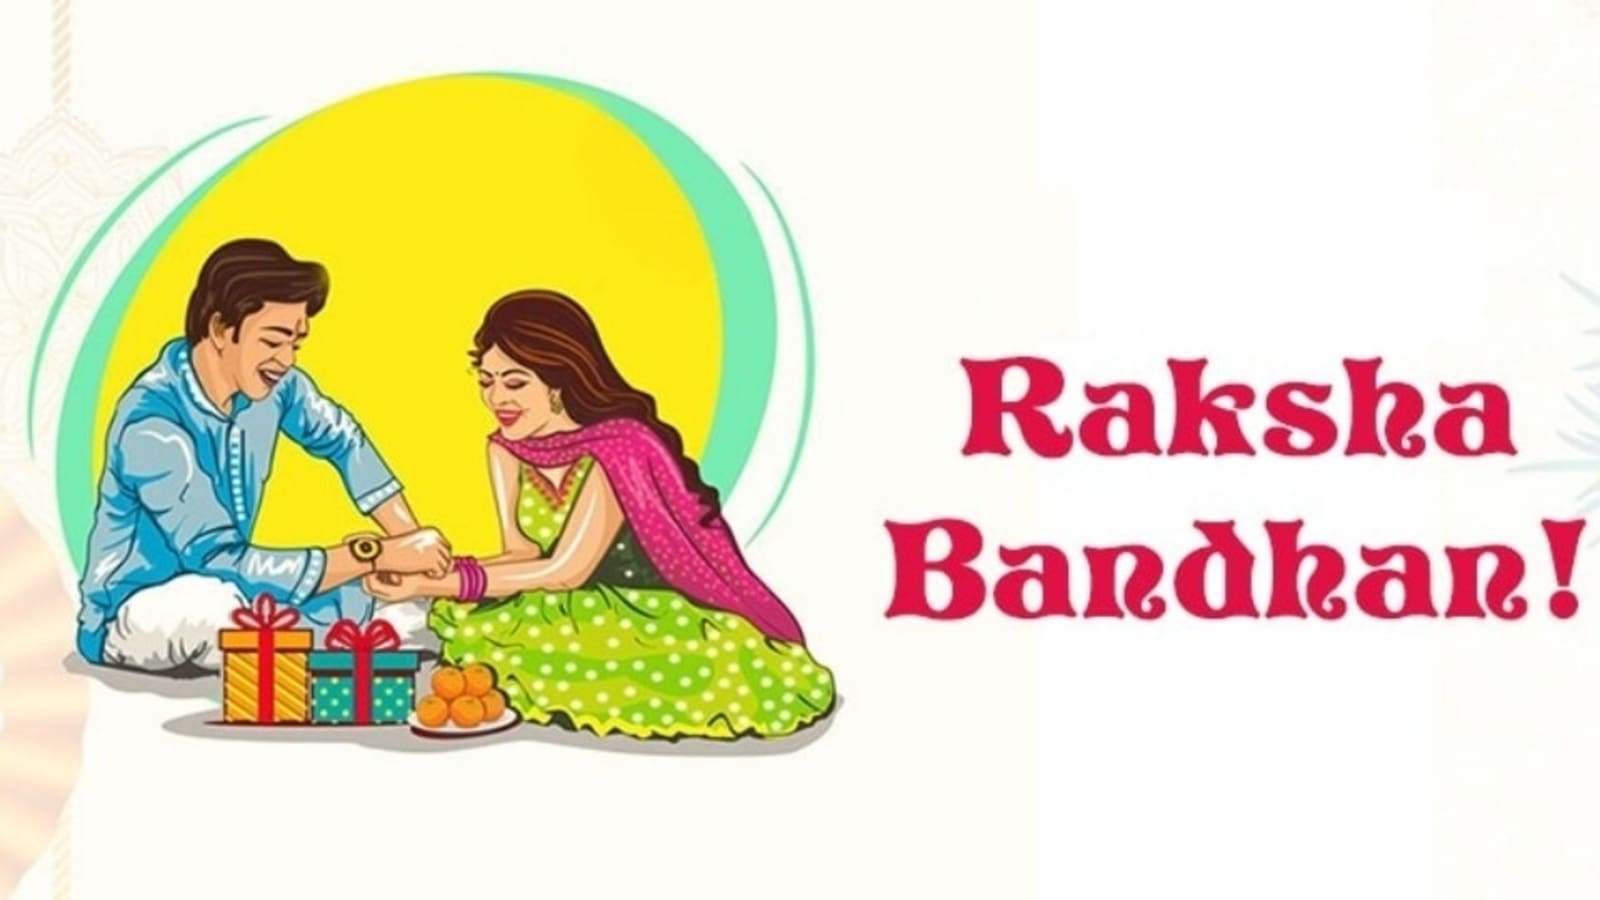 Raksha Bandhan 2022 Date : Is Raksha Bandhan on August 11 or 12 ...